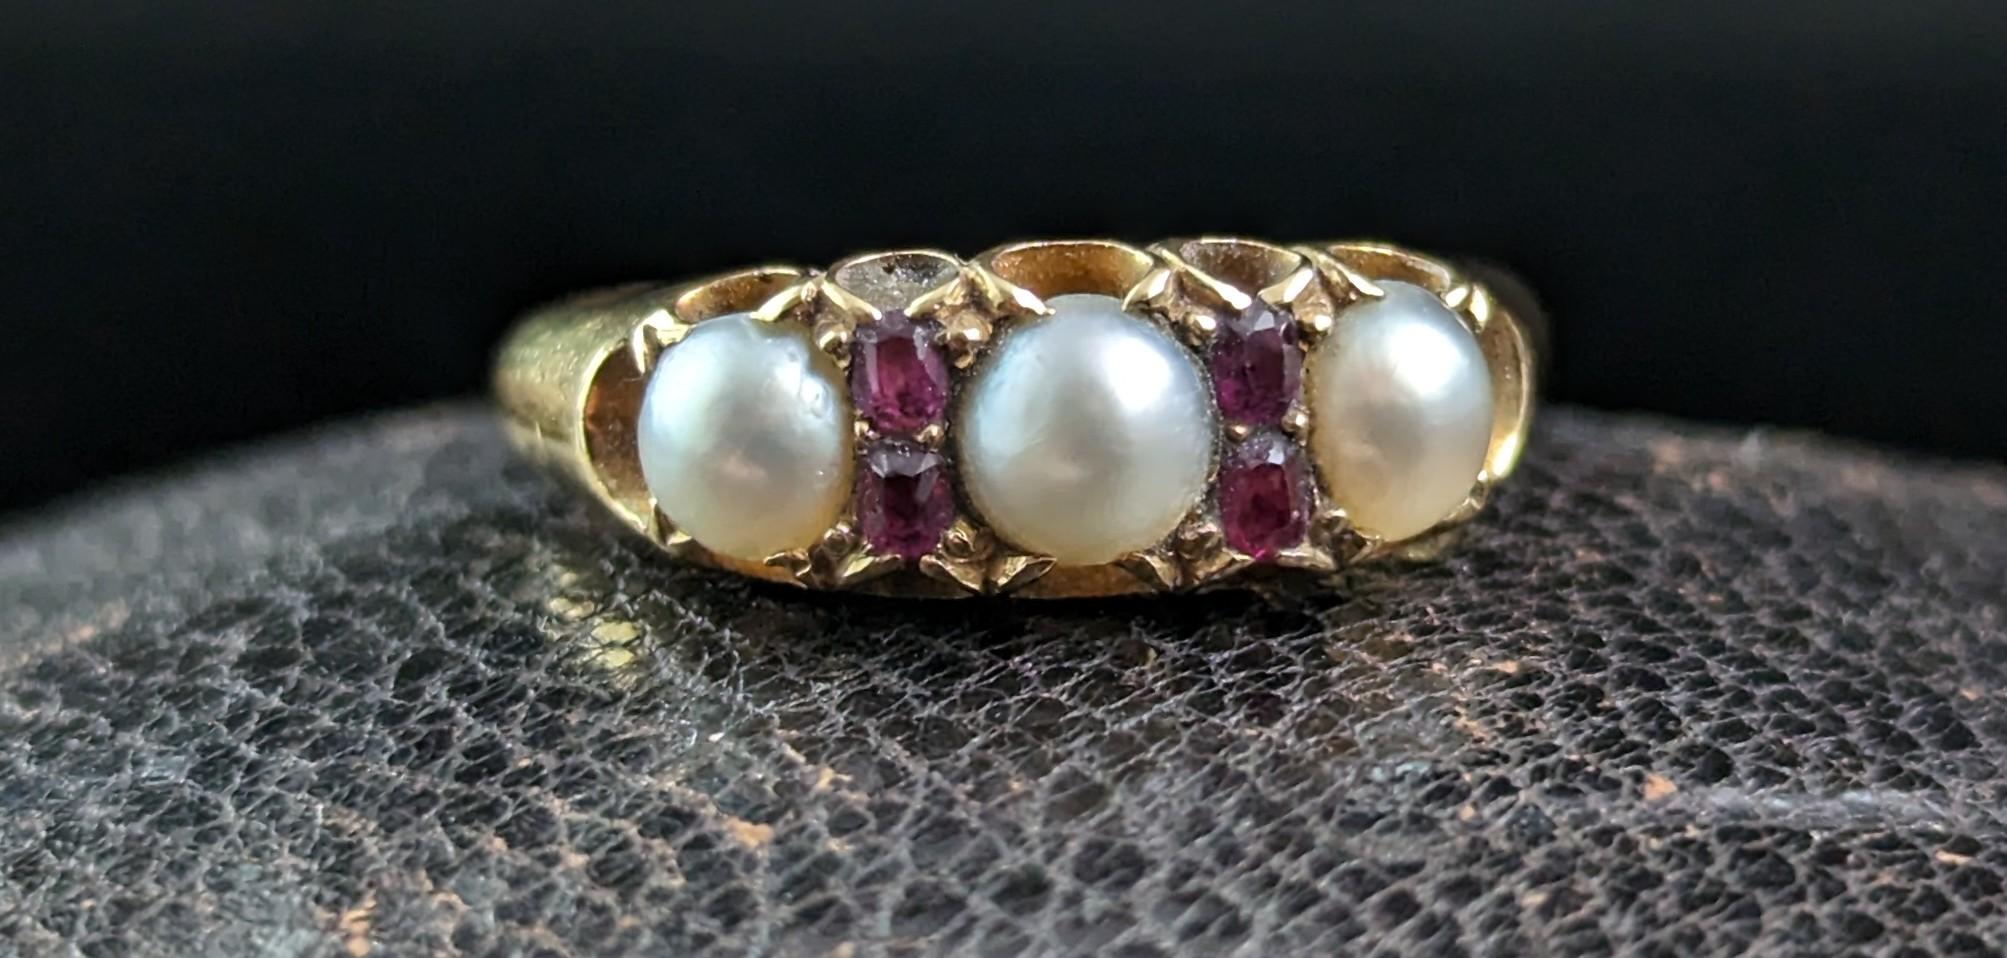 Dieser antike Ring mit Rubin und Splitperle ist einfach göttlich.

Die kühlen, cremefarbenen Perlen bilden einen schönen Kontrast zu den tiefrosa roten Rubinen und dem satten, butterweichen Gold.

Er besteht aus drei cremefarbenen, gespaltenen